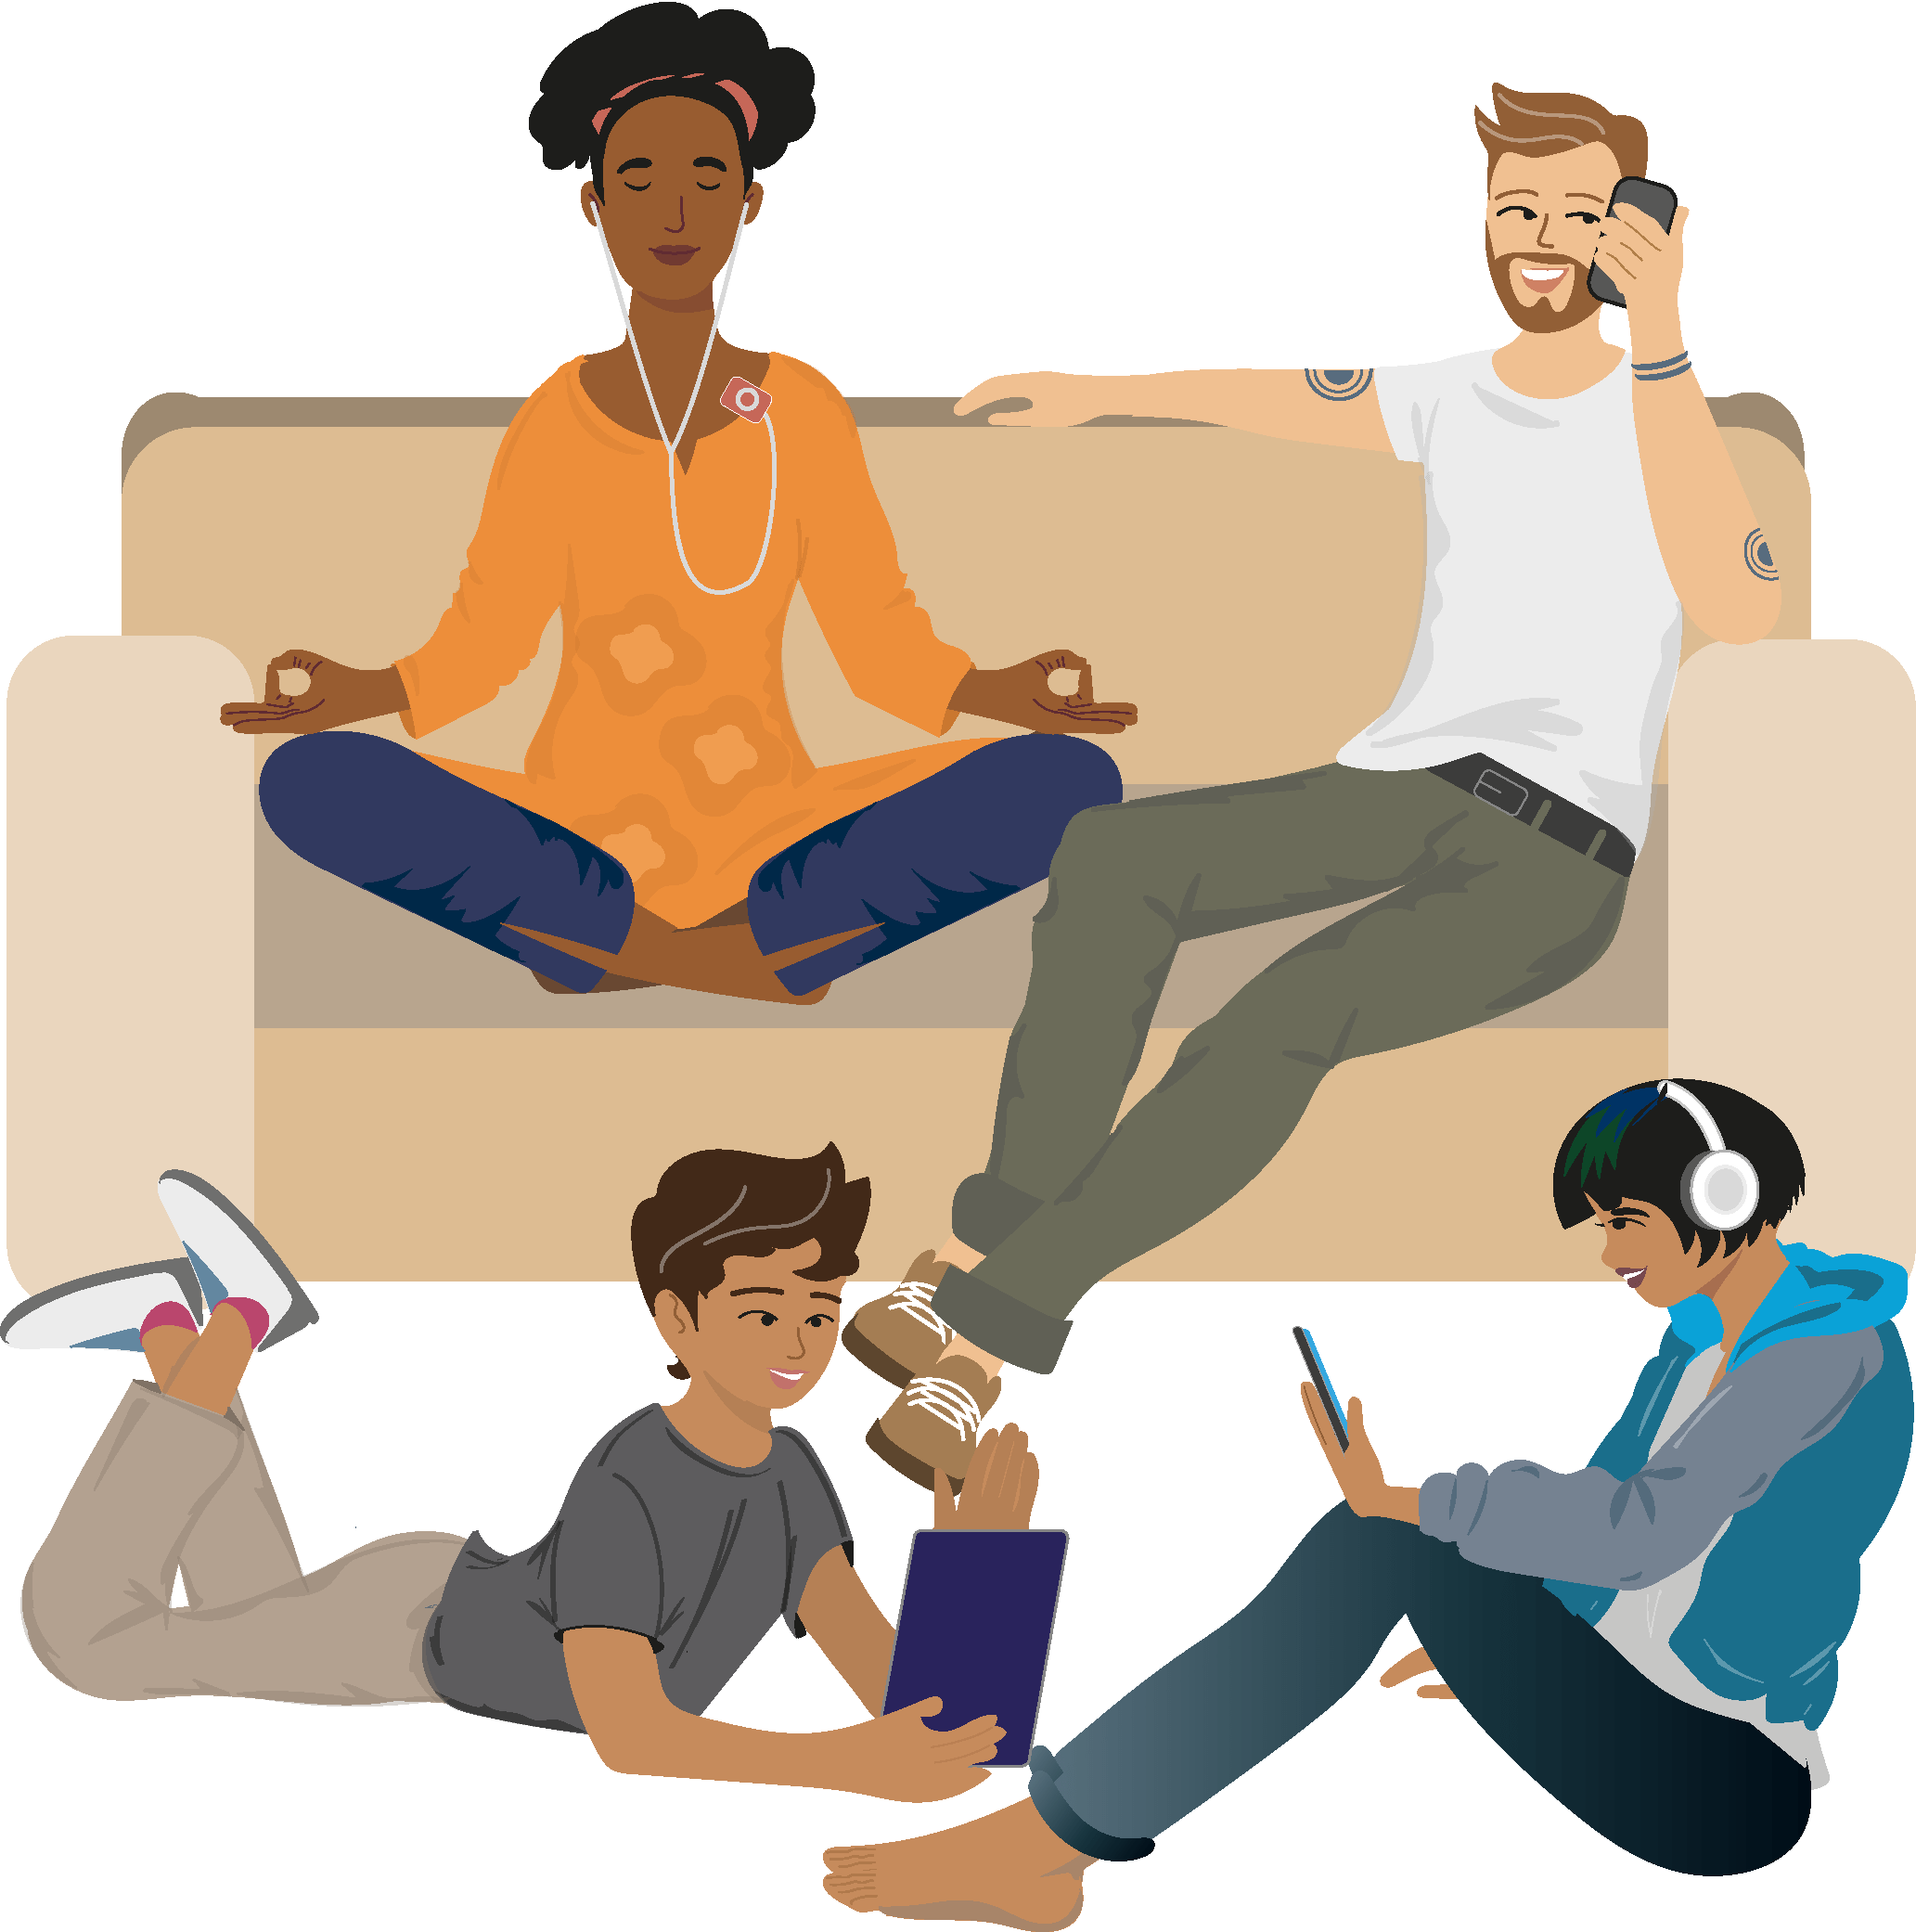 Illustration für Lernmedien aller Bildungsbereiche: Das Elternpaar einer interkulturellen Familie sitzt auf einem Sofa, die ca. 15-jährige Tochter und der ca. 12-jähriger Sohn auf dem Boden davor und alle sind mit der Nutzung unterschiedlicher Medien beschäftigt.